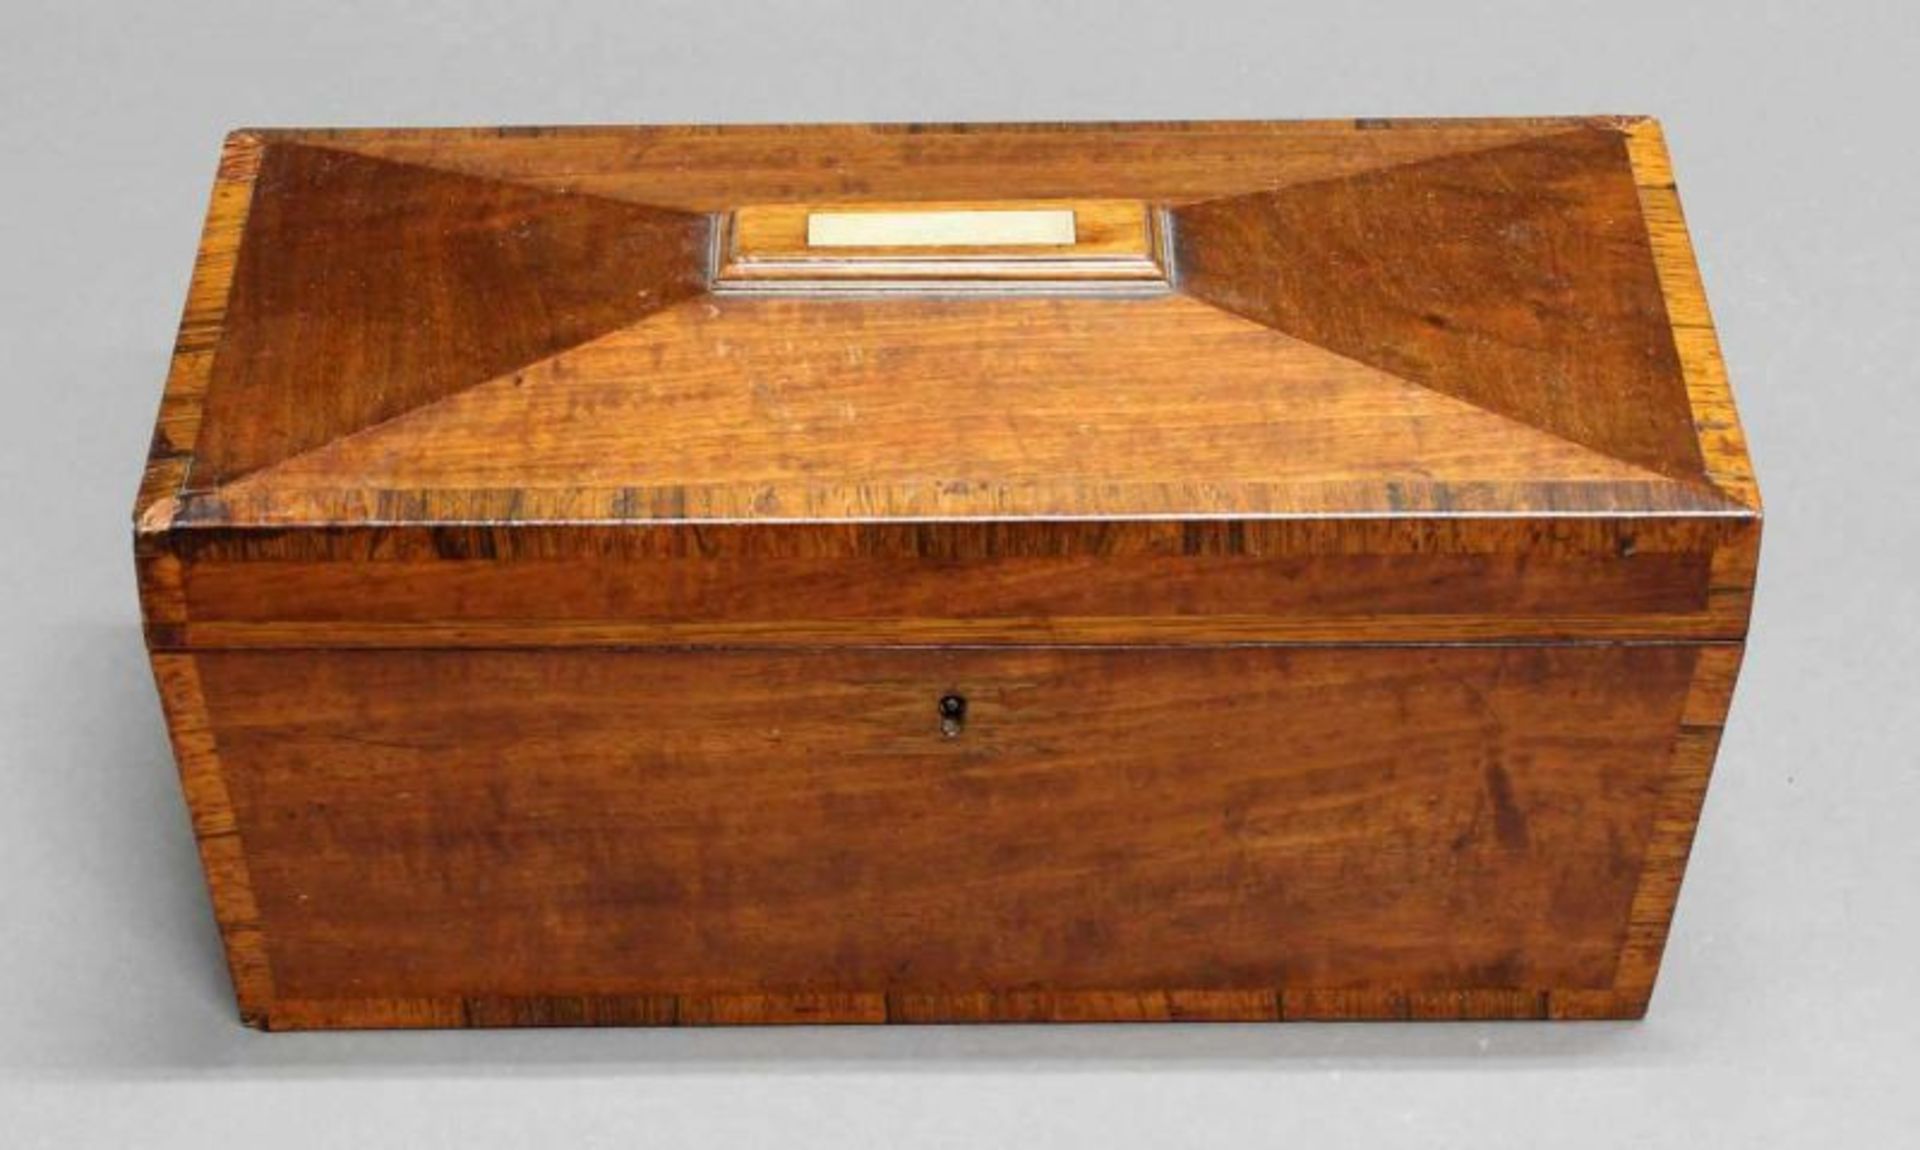 Teacaddy, England, 19. Jh., Mahagoni, Deckel mit Perlmutteinlage, innen zwei Teedosen aus Holz und